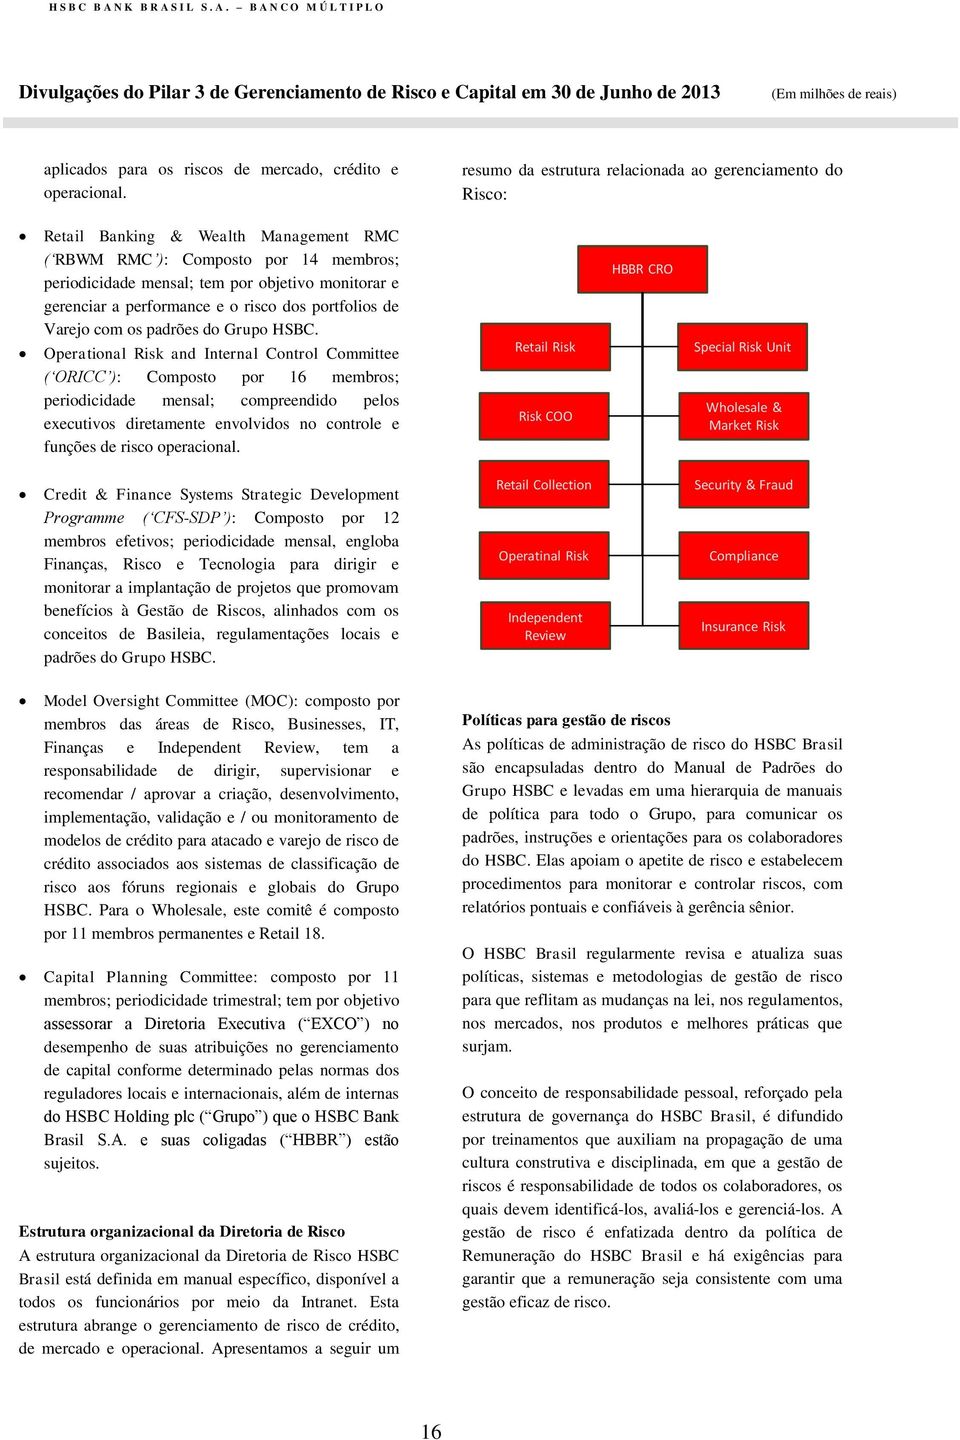 performance e o risco dos portfolios de Varejo com os padrões do Grupo HSBC.